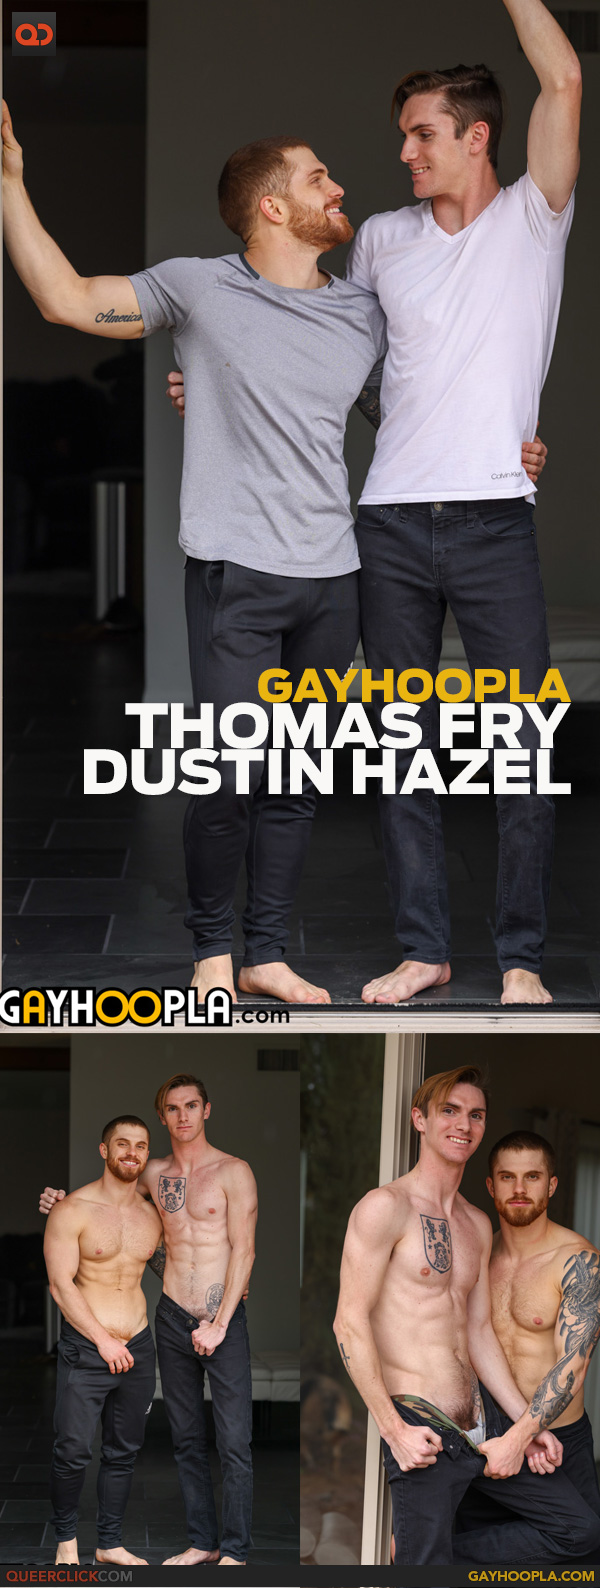 GayHoopla: Thomas Fry and Dustin Hazel